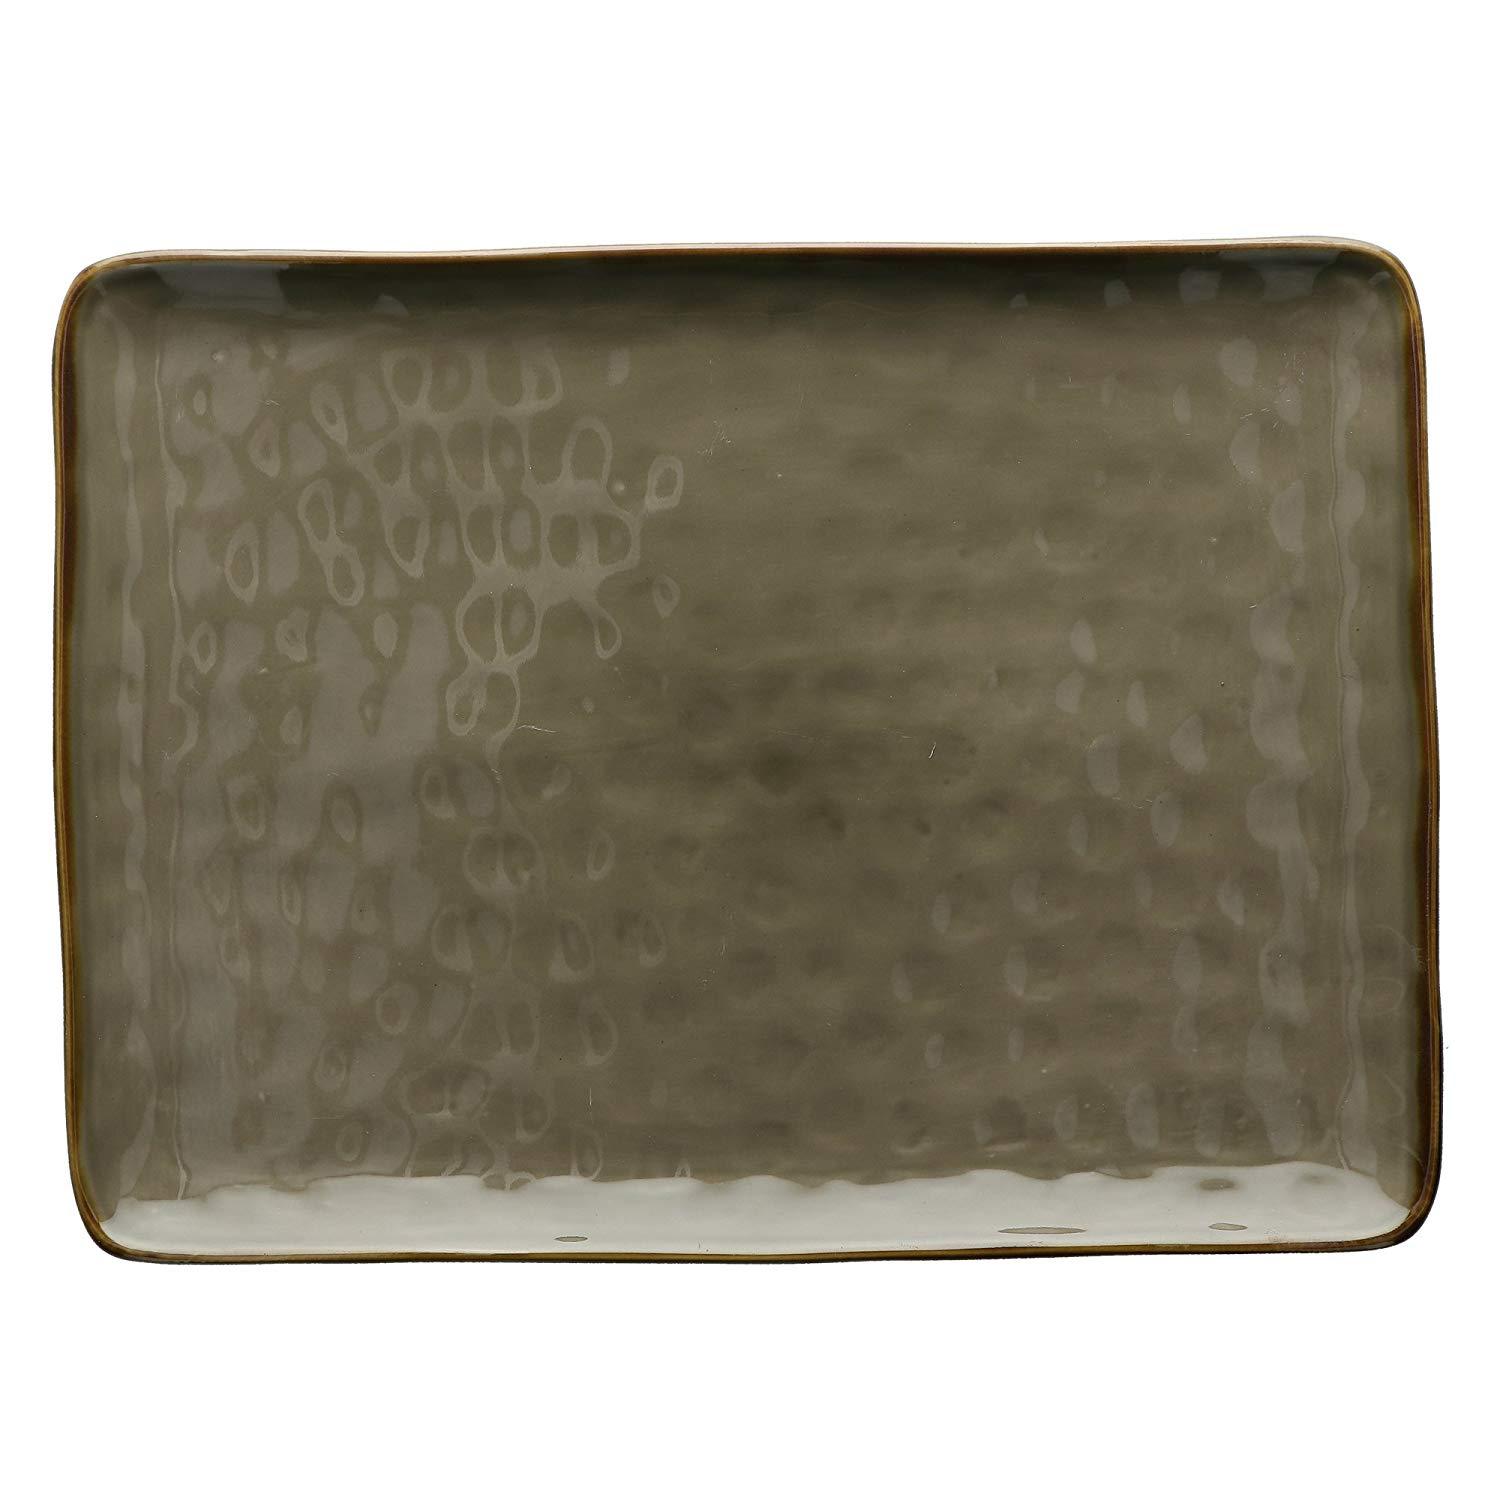 Piatto rettangolare vassoio in ceramica 36 x 26,5 cm colore grigio tortora shabby chic - Dolci pensieri gift